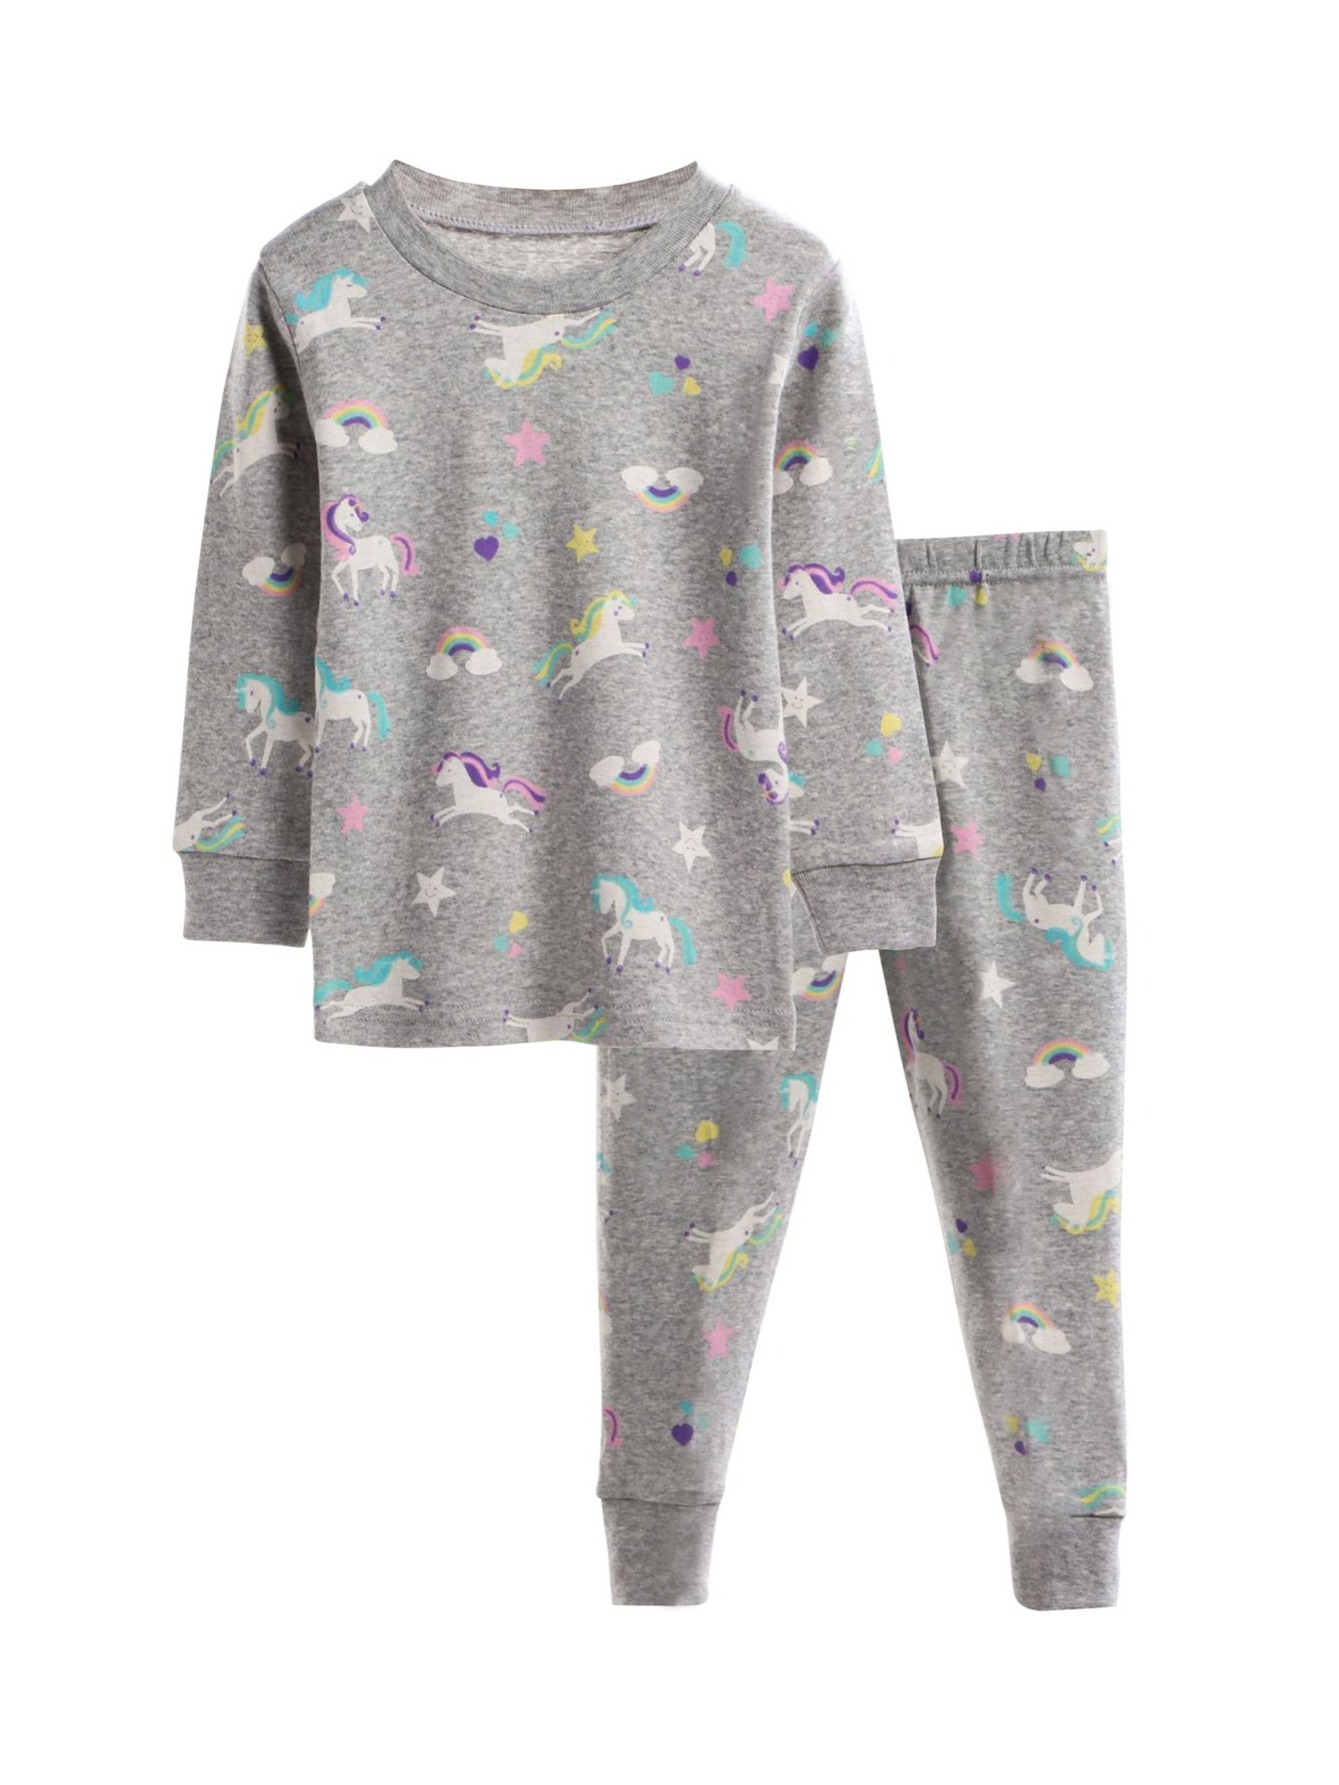 los mejores pijamas en pijamalindo.com